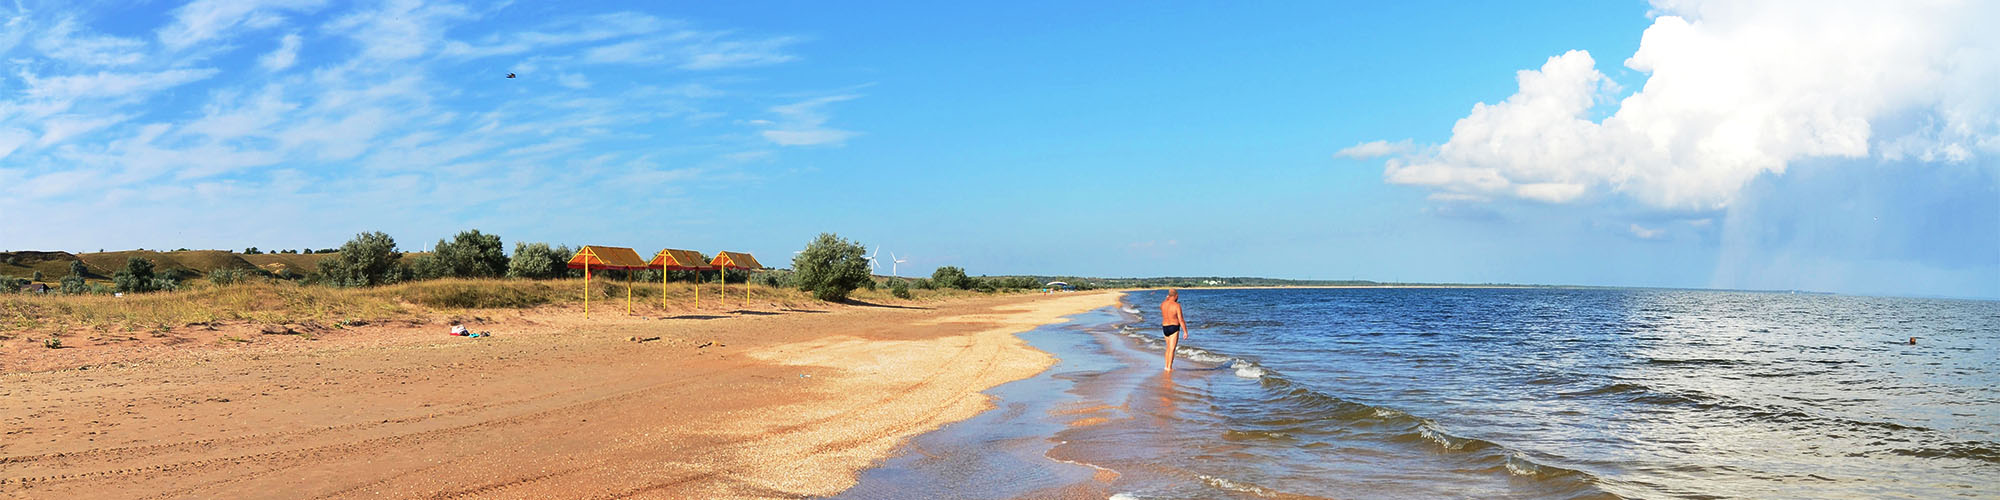 Пляж и море в Новоотрадном фото